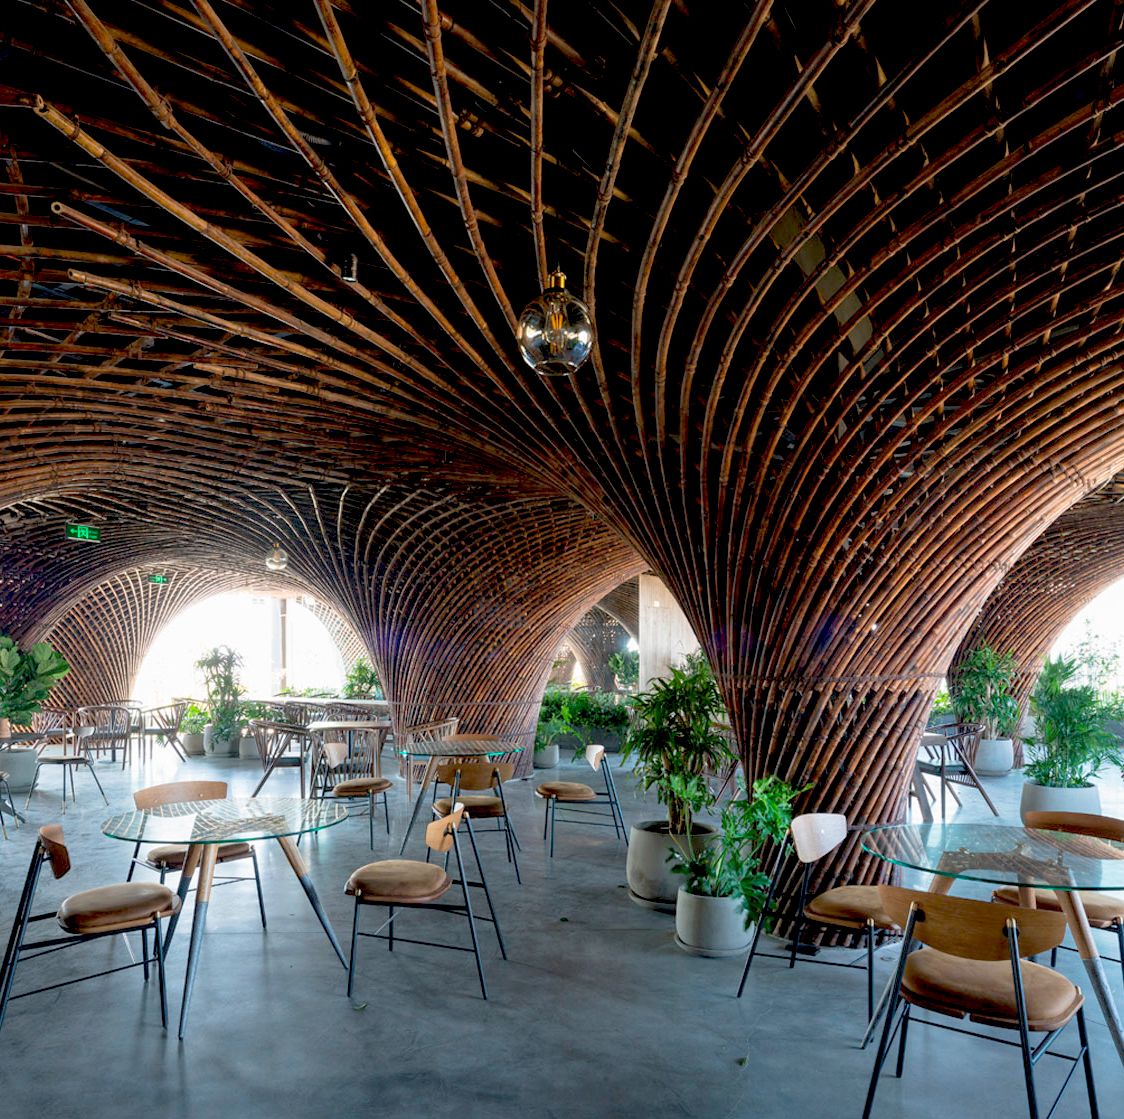 Nocenco Café, una cafetería de bambú en Vietnam